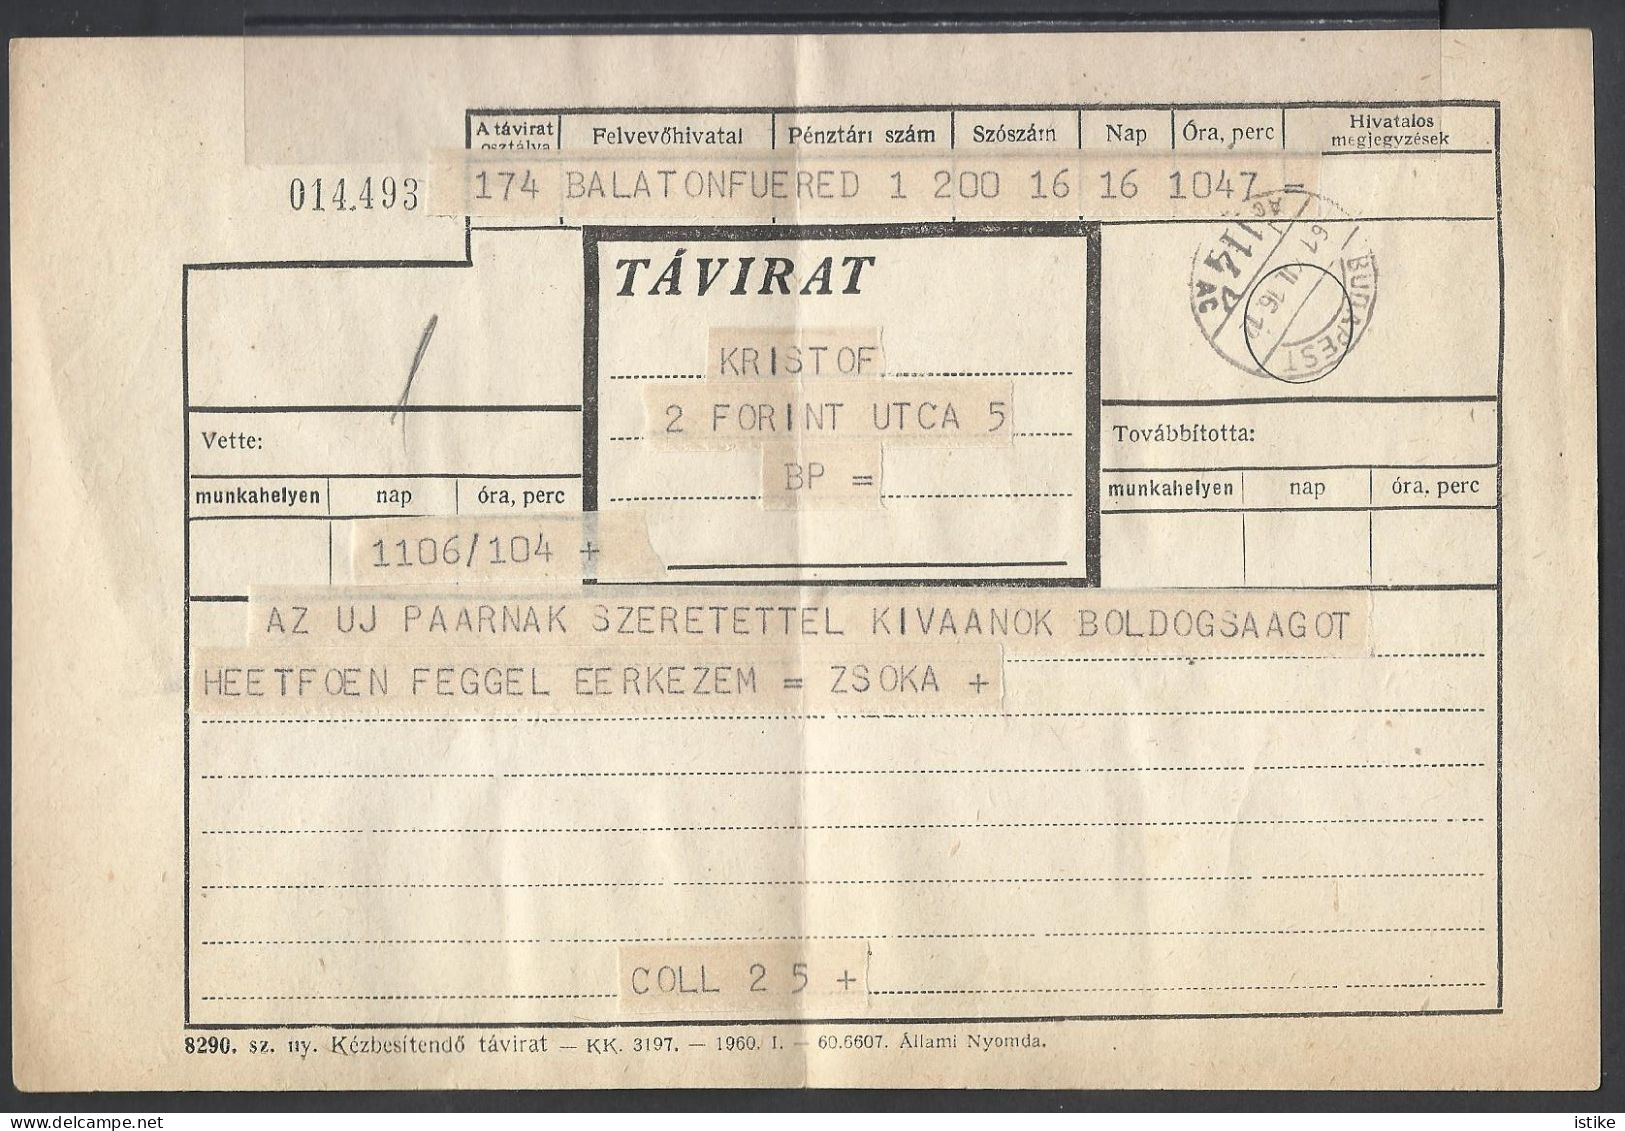 Hungary, Telegram, 1961 - Telegraph